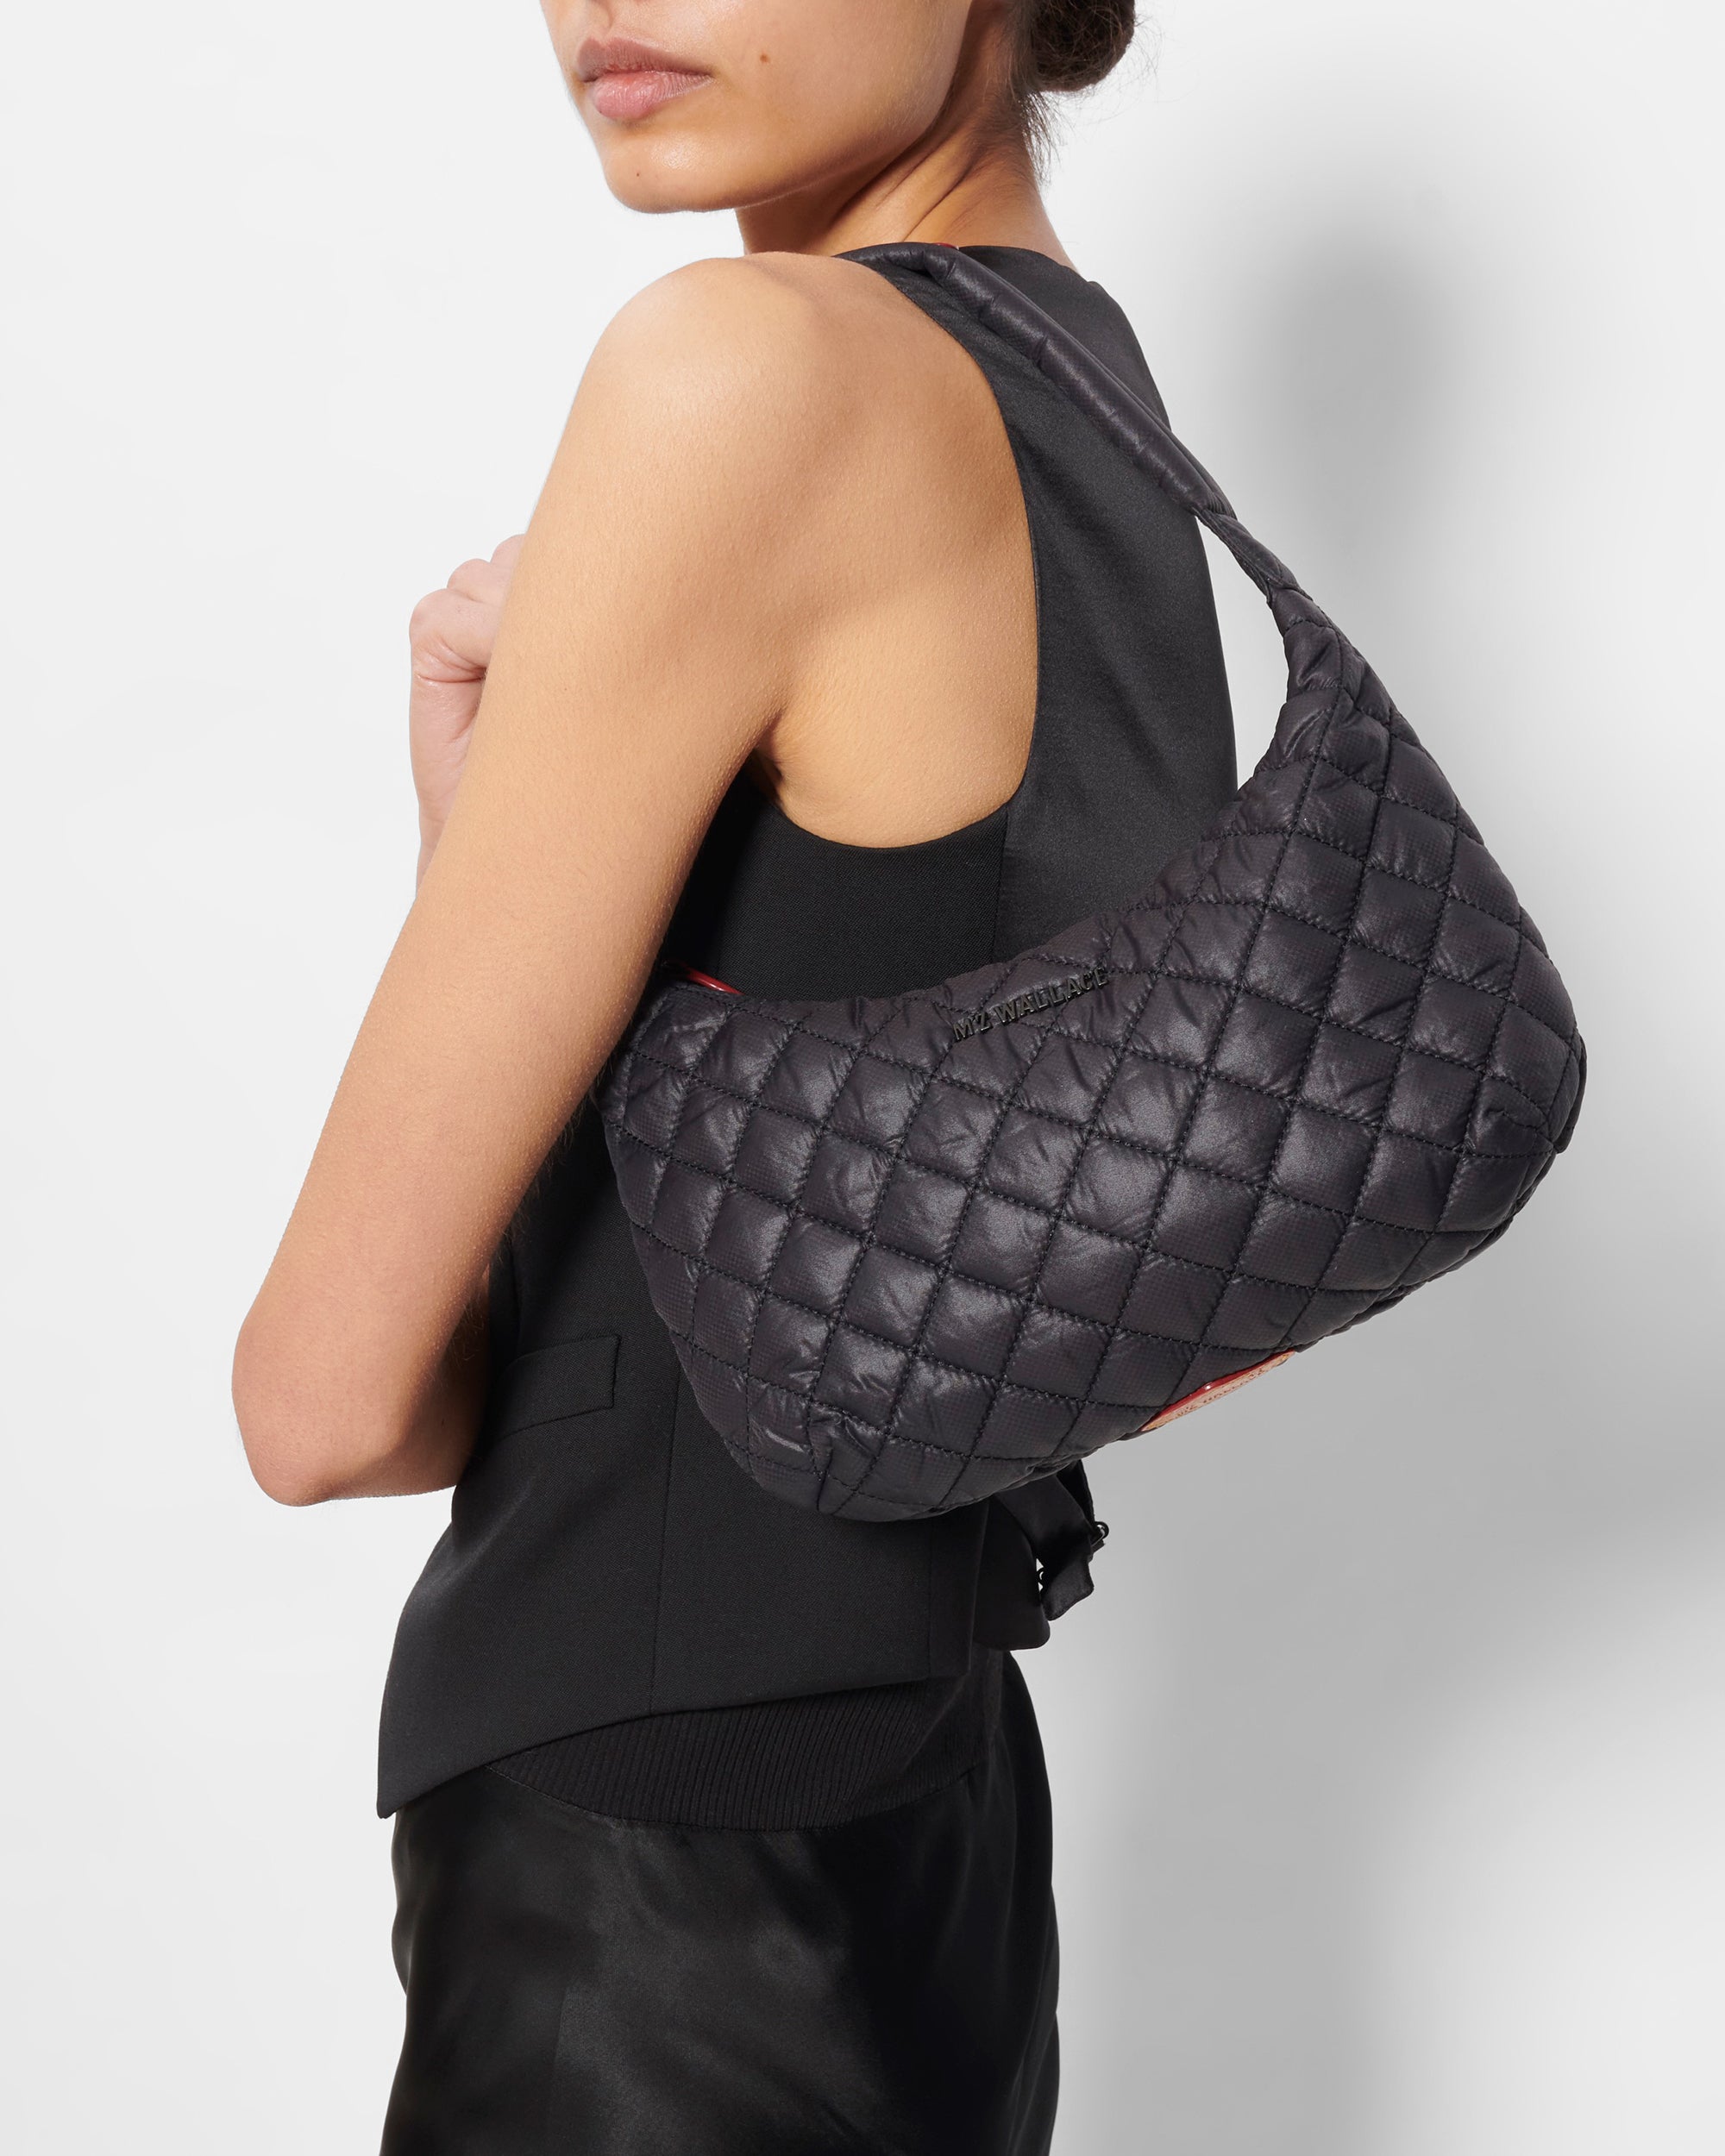 Women's Shoulder Bags, Small & Big Shoulder Bags